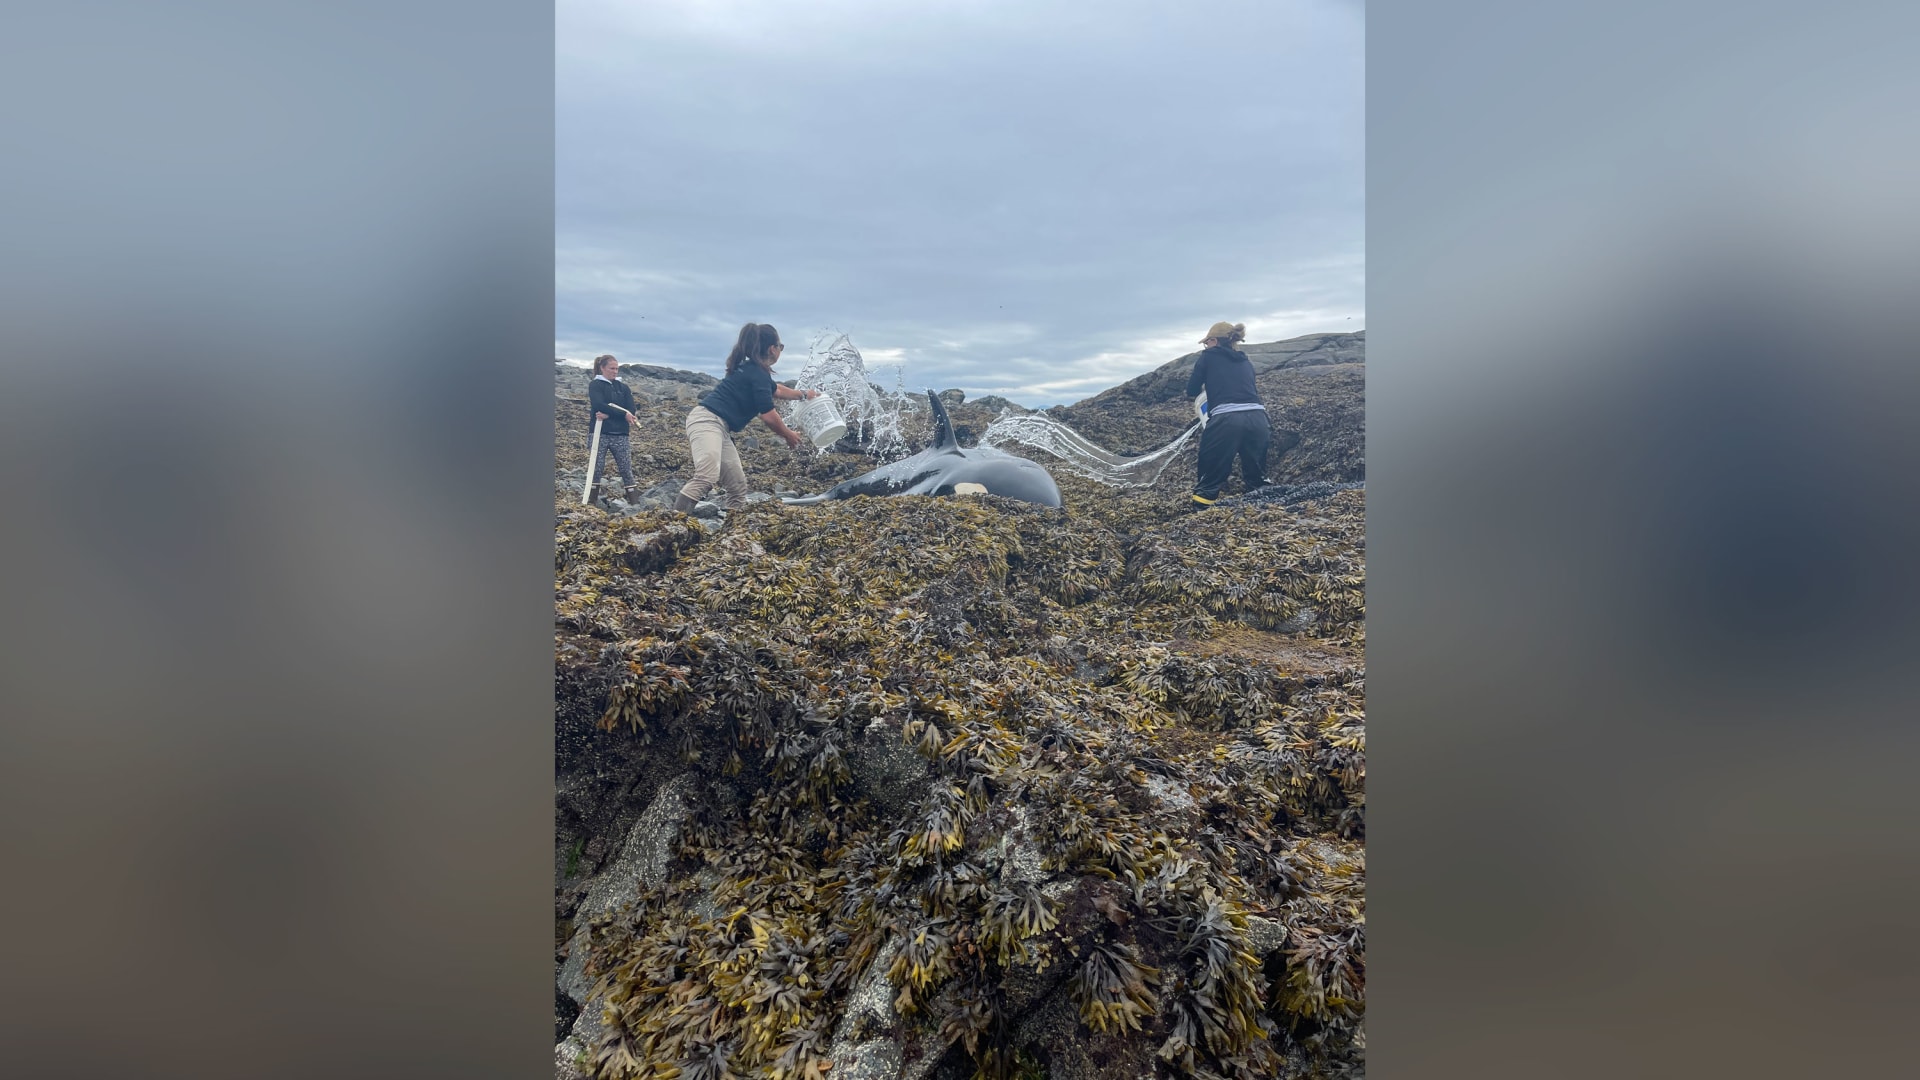 ظل عالقاً لساعات.. إنقاذ حوت أوركا من ساحل صخري في ألاسكا